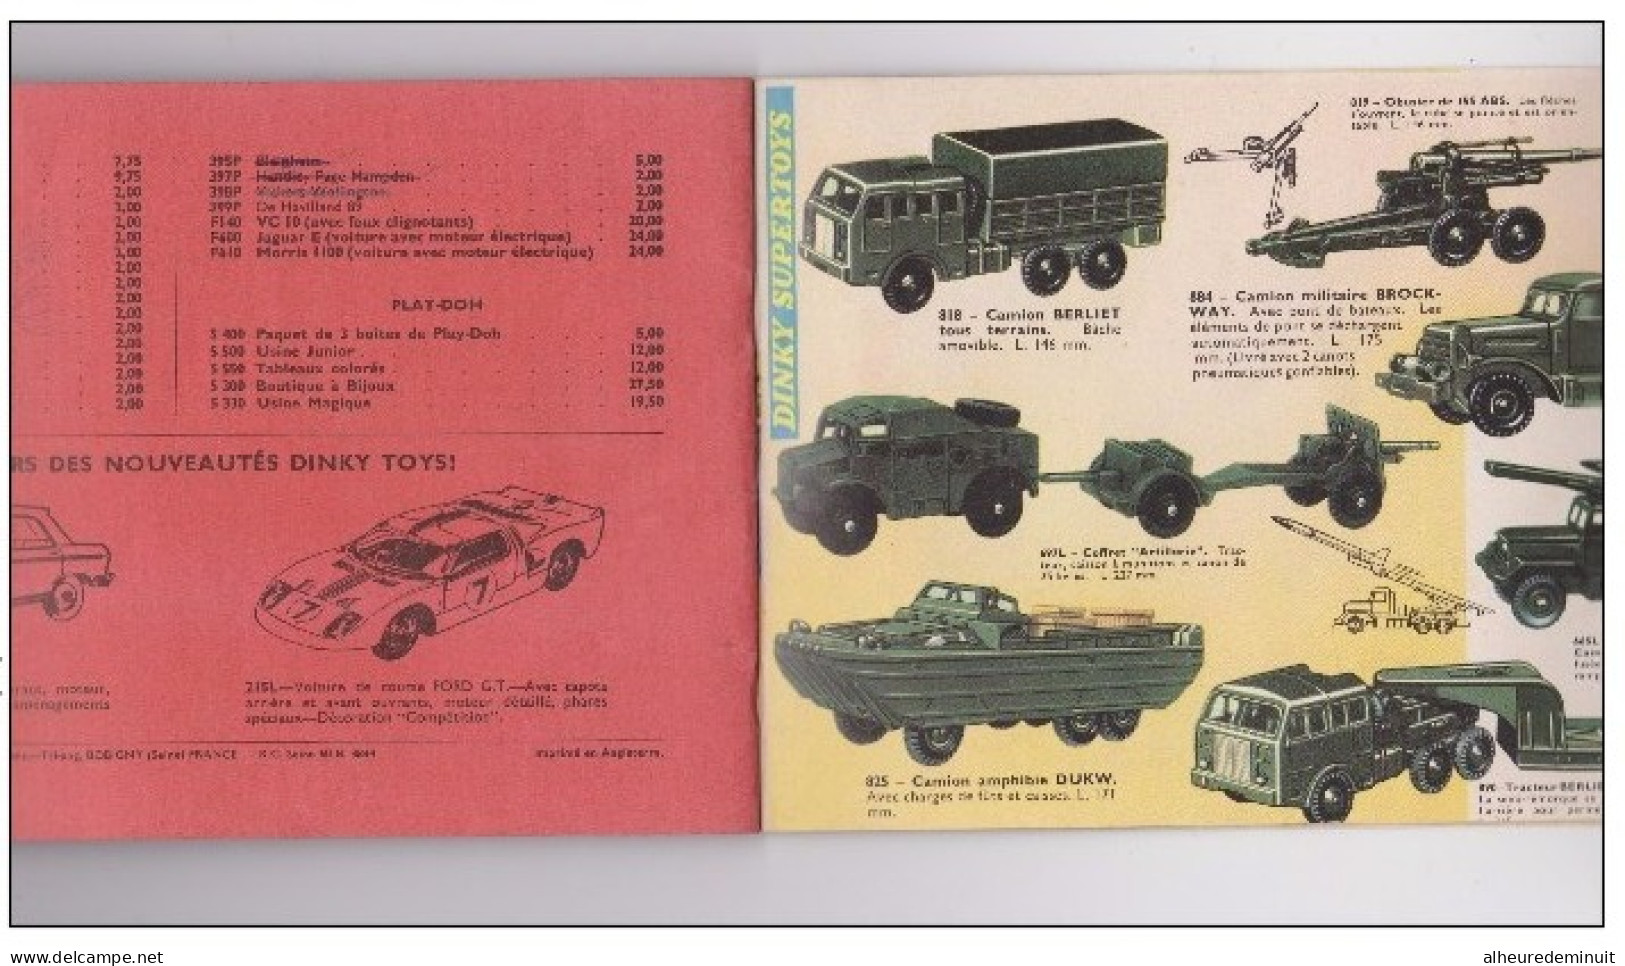 catalogue DINKY TOYS"SUPERTOYS"1965/1966"voiture miniature"autobus"camions"militaire"maquette"DS"Peugeot"Renault"Citroën